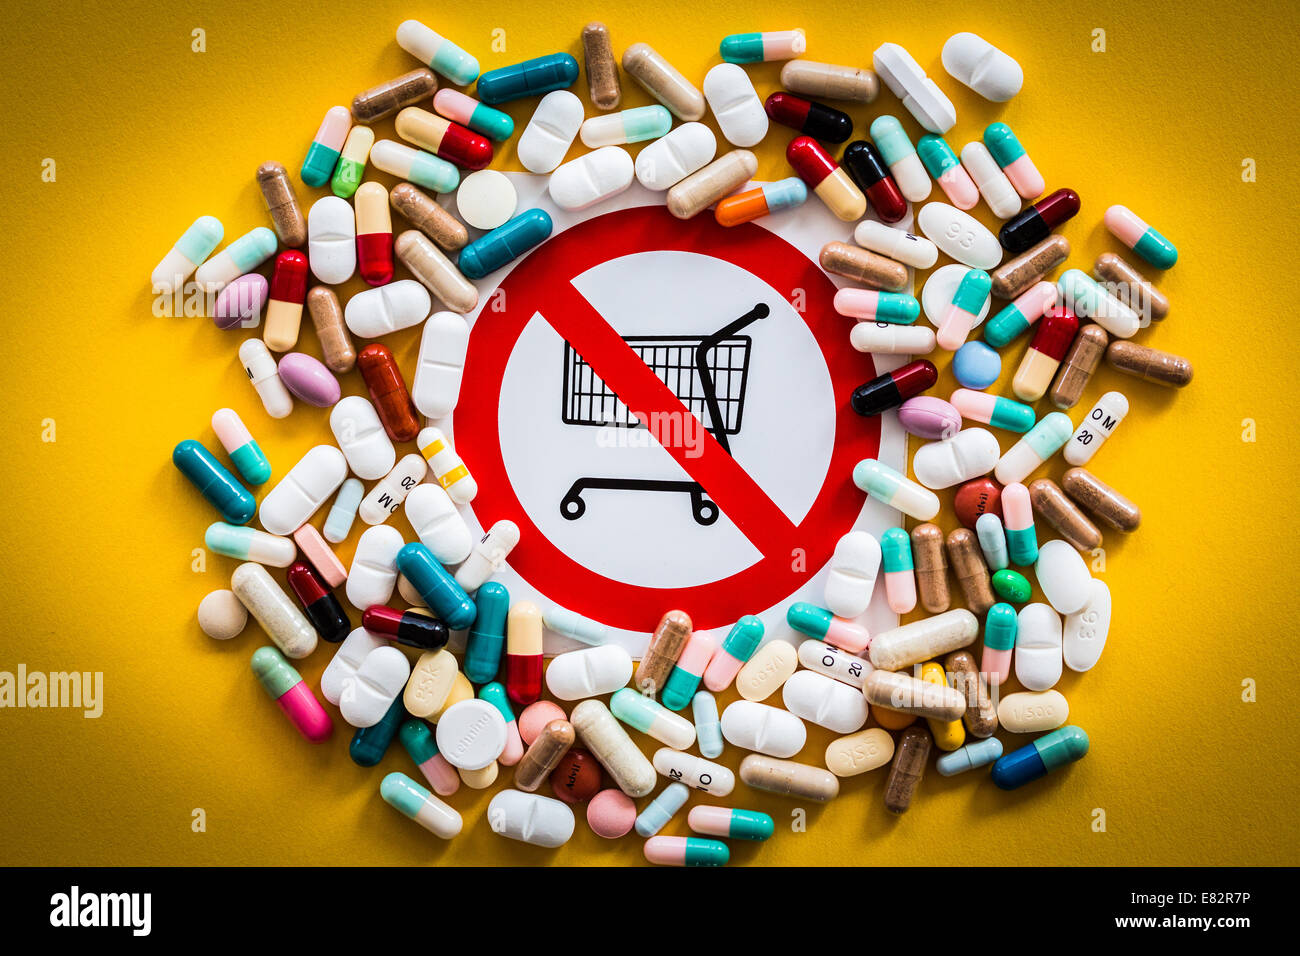 Immagine concettuale sulla vendita di droghe proibite nel supermercato. Foto Stock